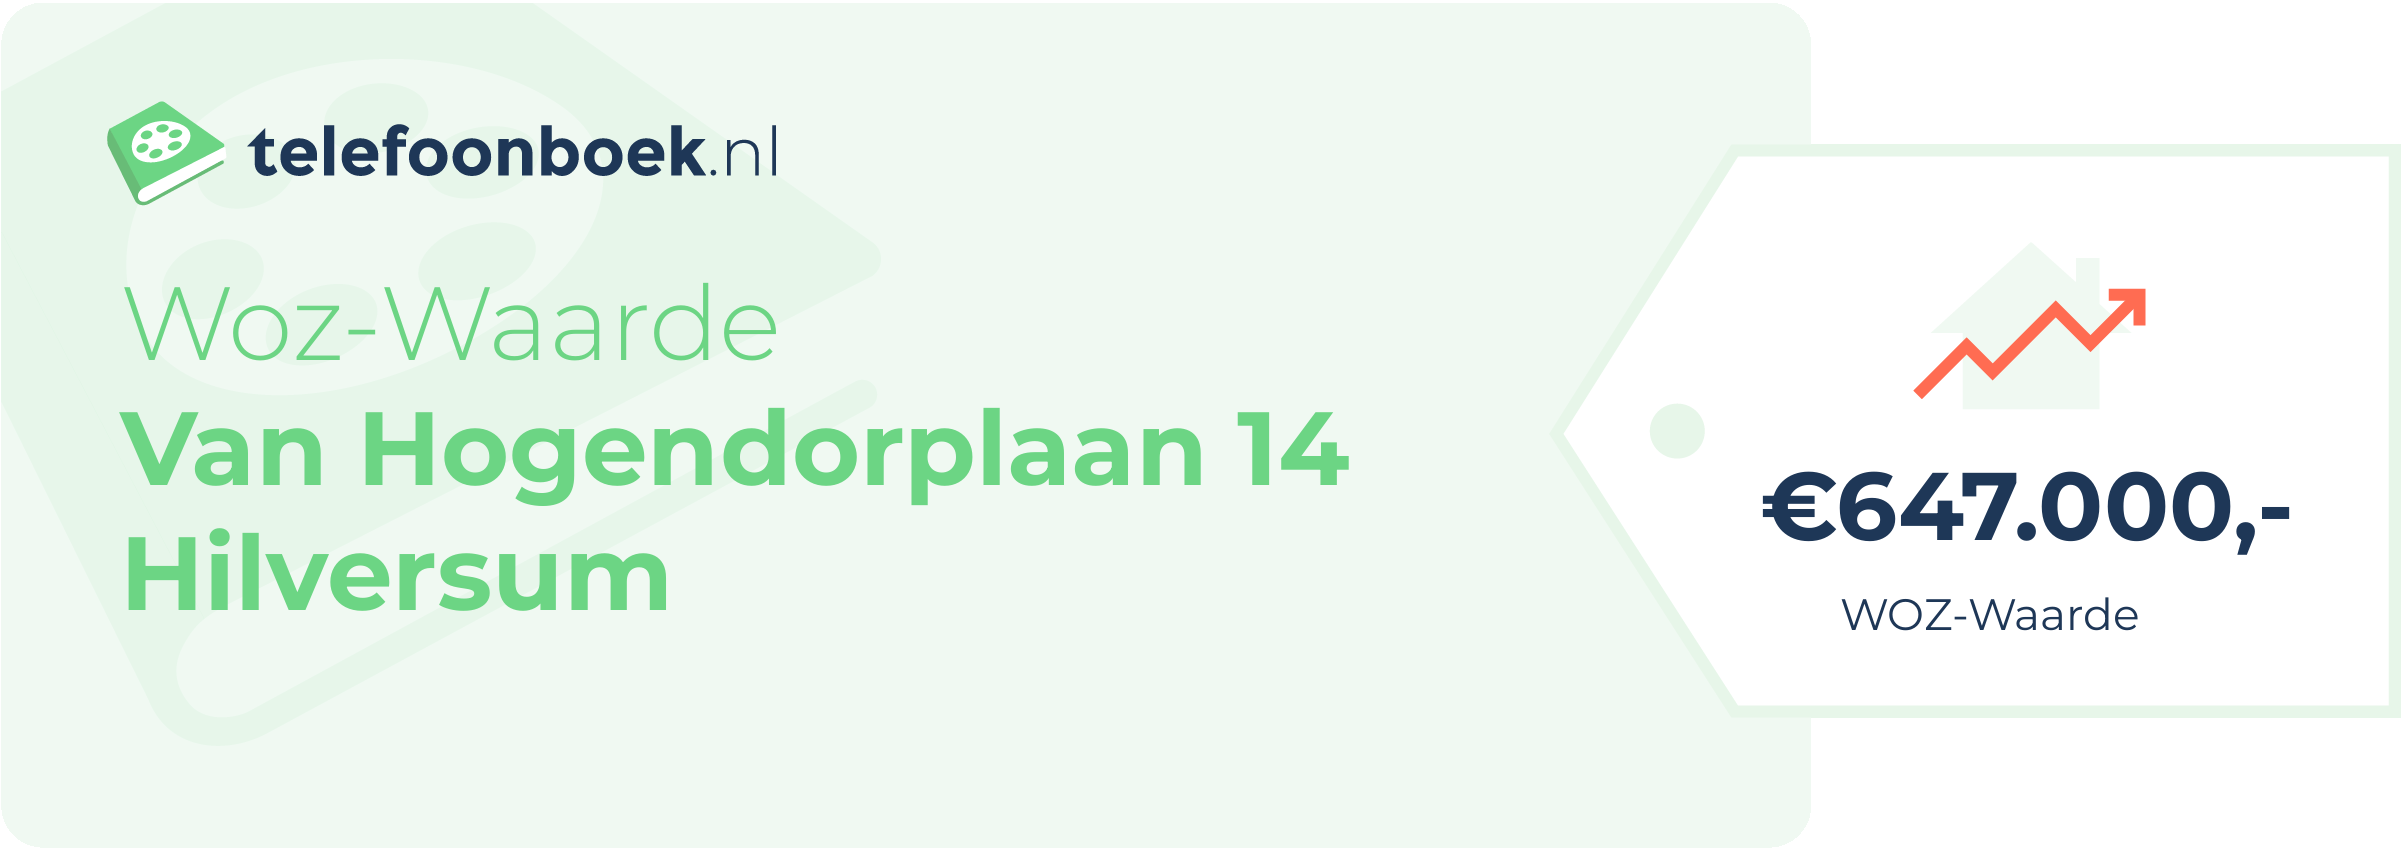 WOZ-waarde Van Hogendorplaan 14 Hilversum